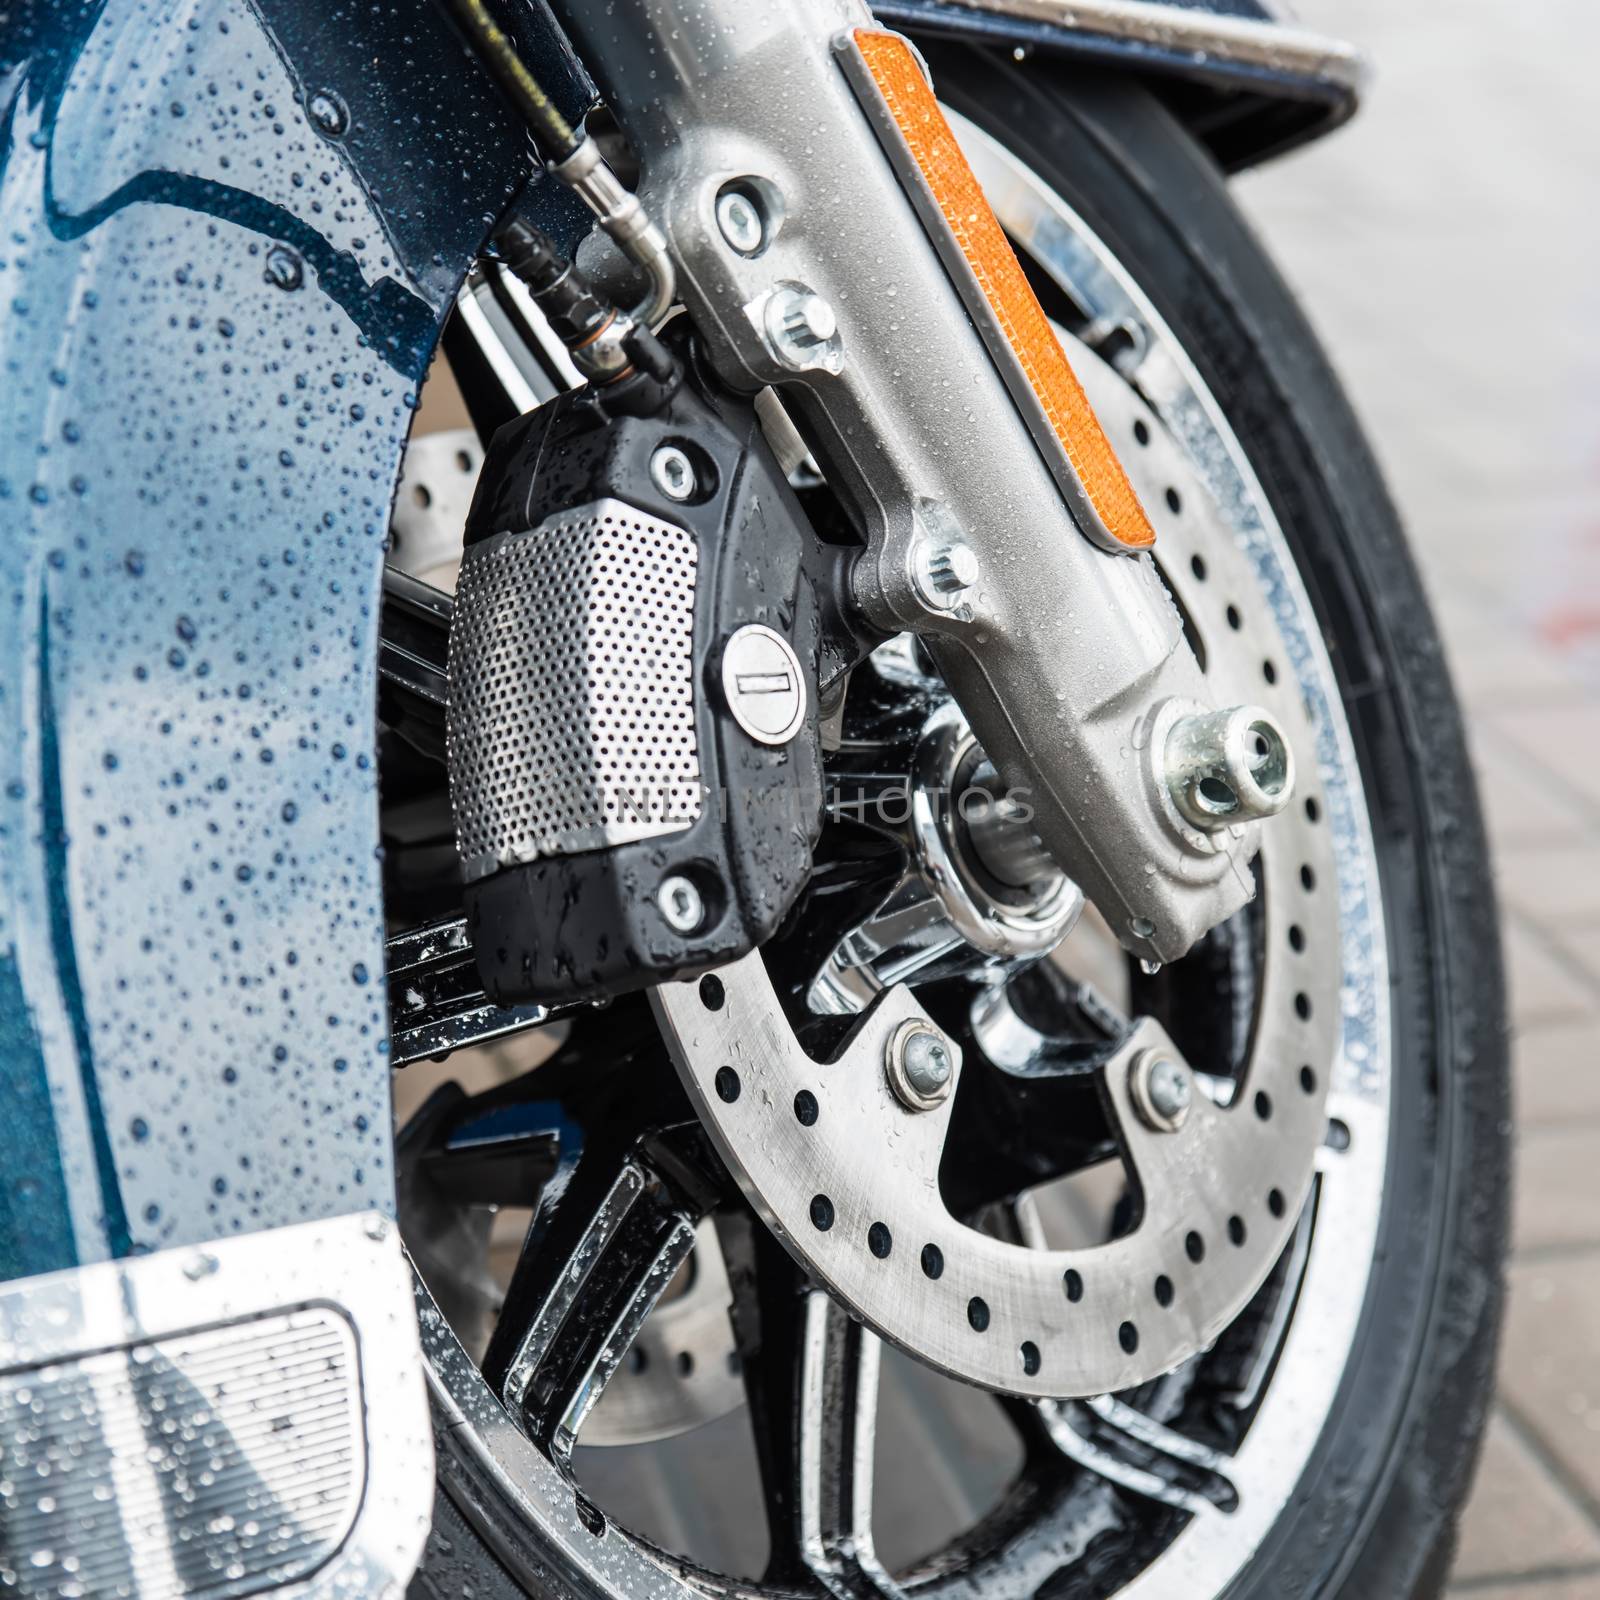 New shiny brake discs on motorcycle by sarymsakov